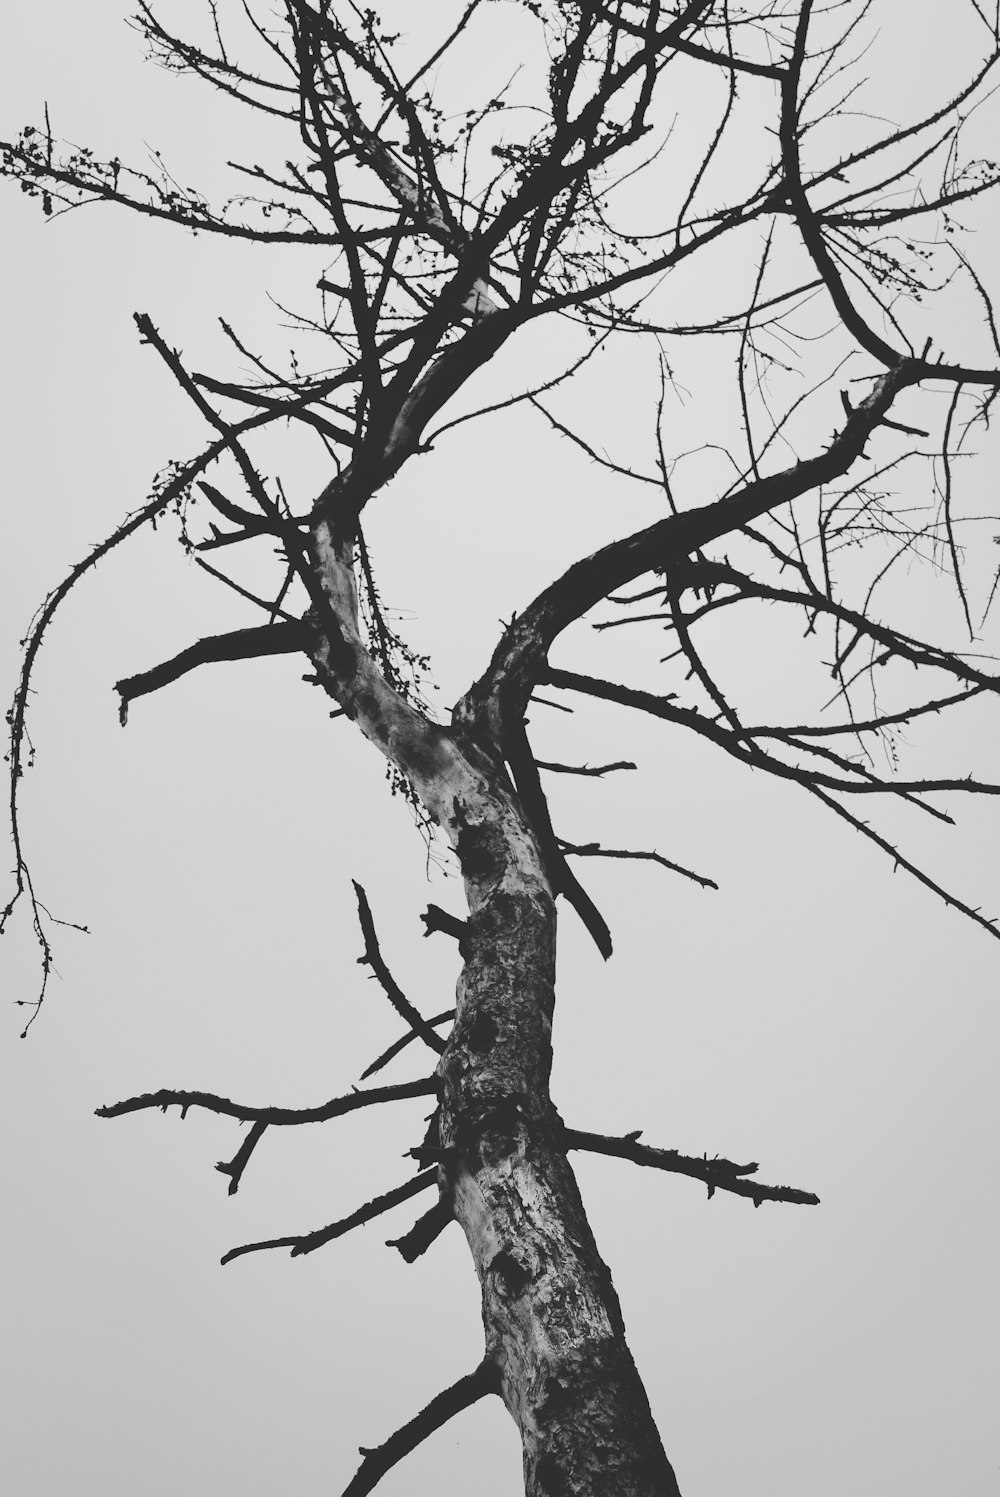 albero senza foglie sotto il cielo bianco